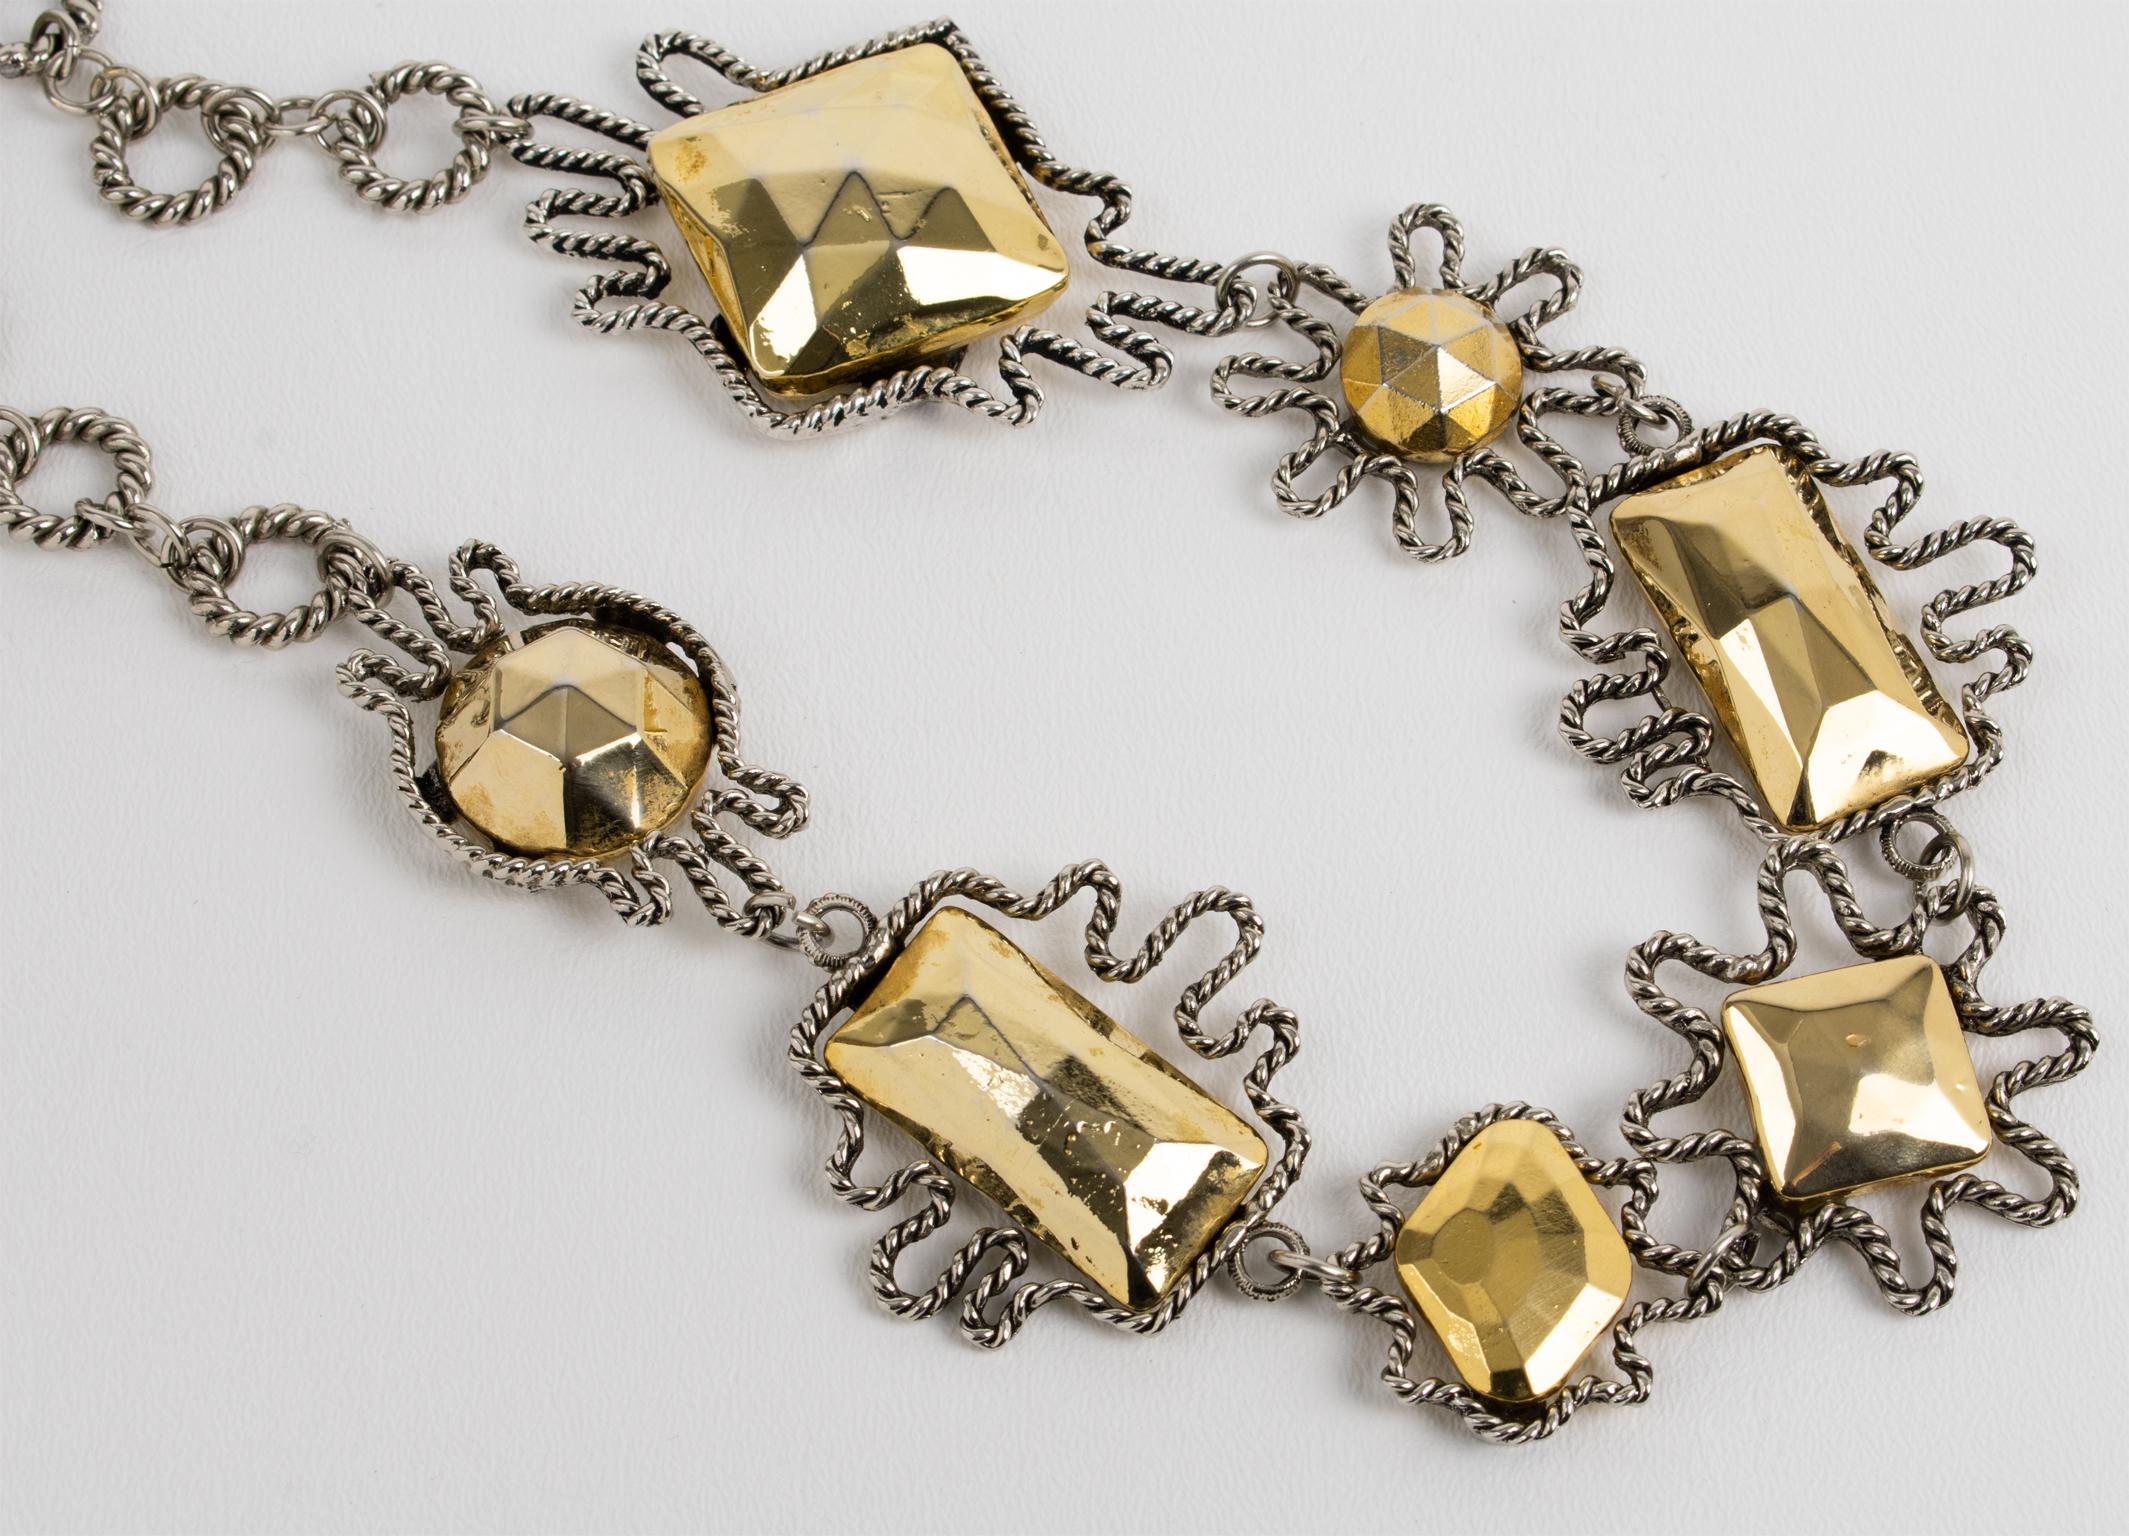 Alexis Lahellec Paris Massive Gilt Metal and Silver Plate Charm Necklace For Sale 1